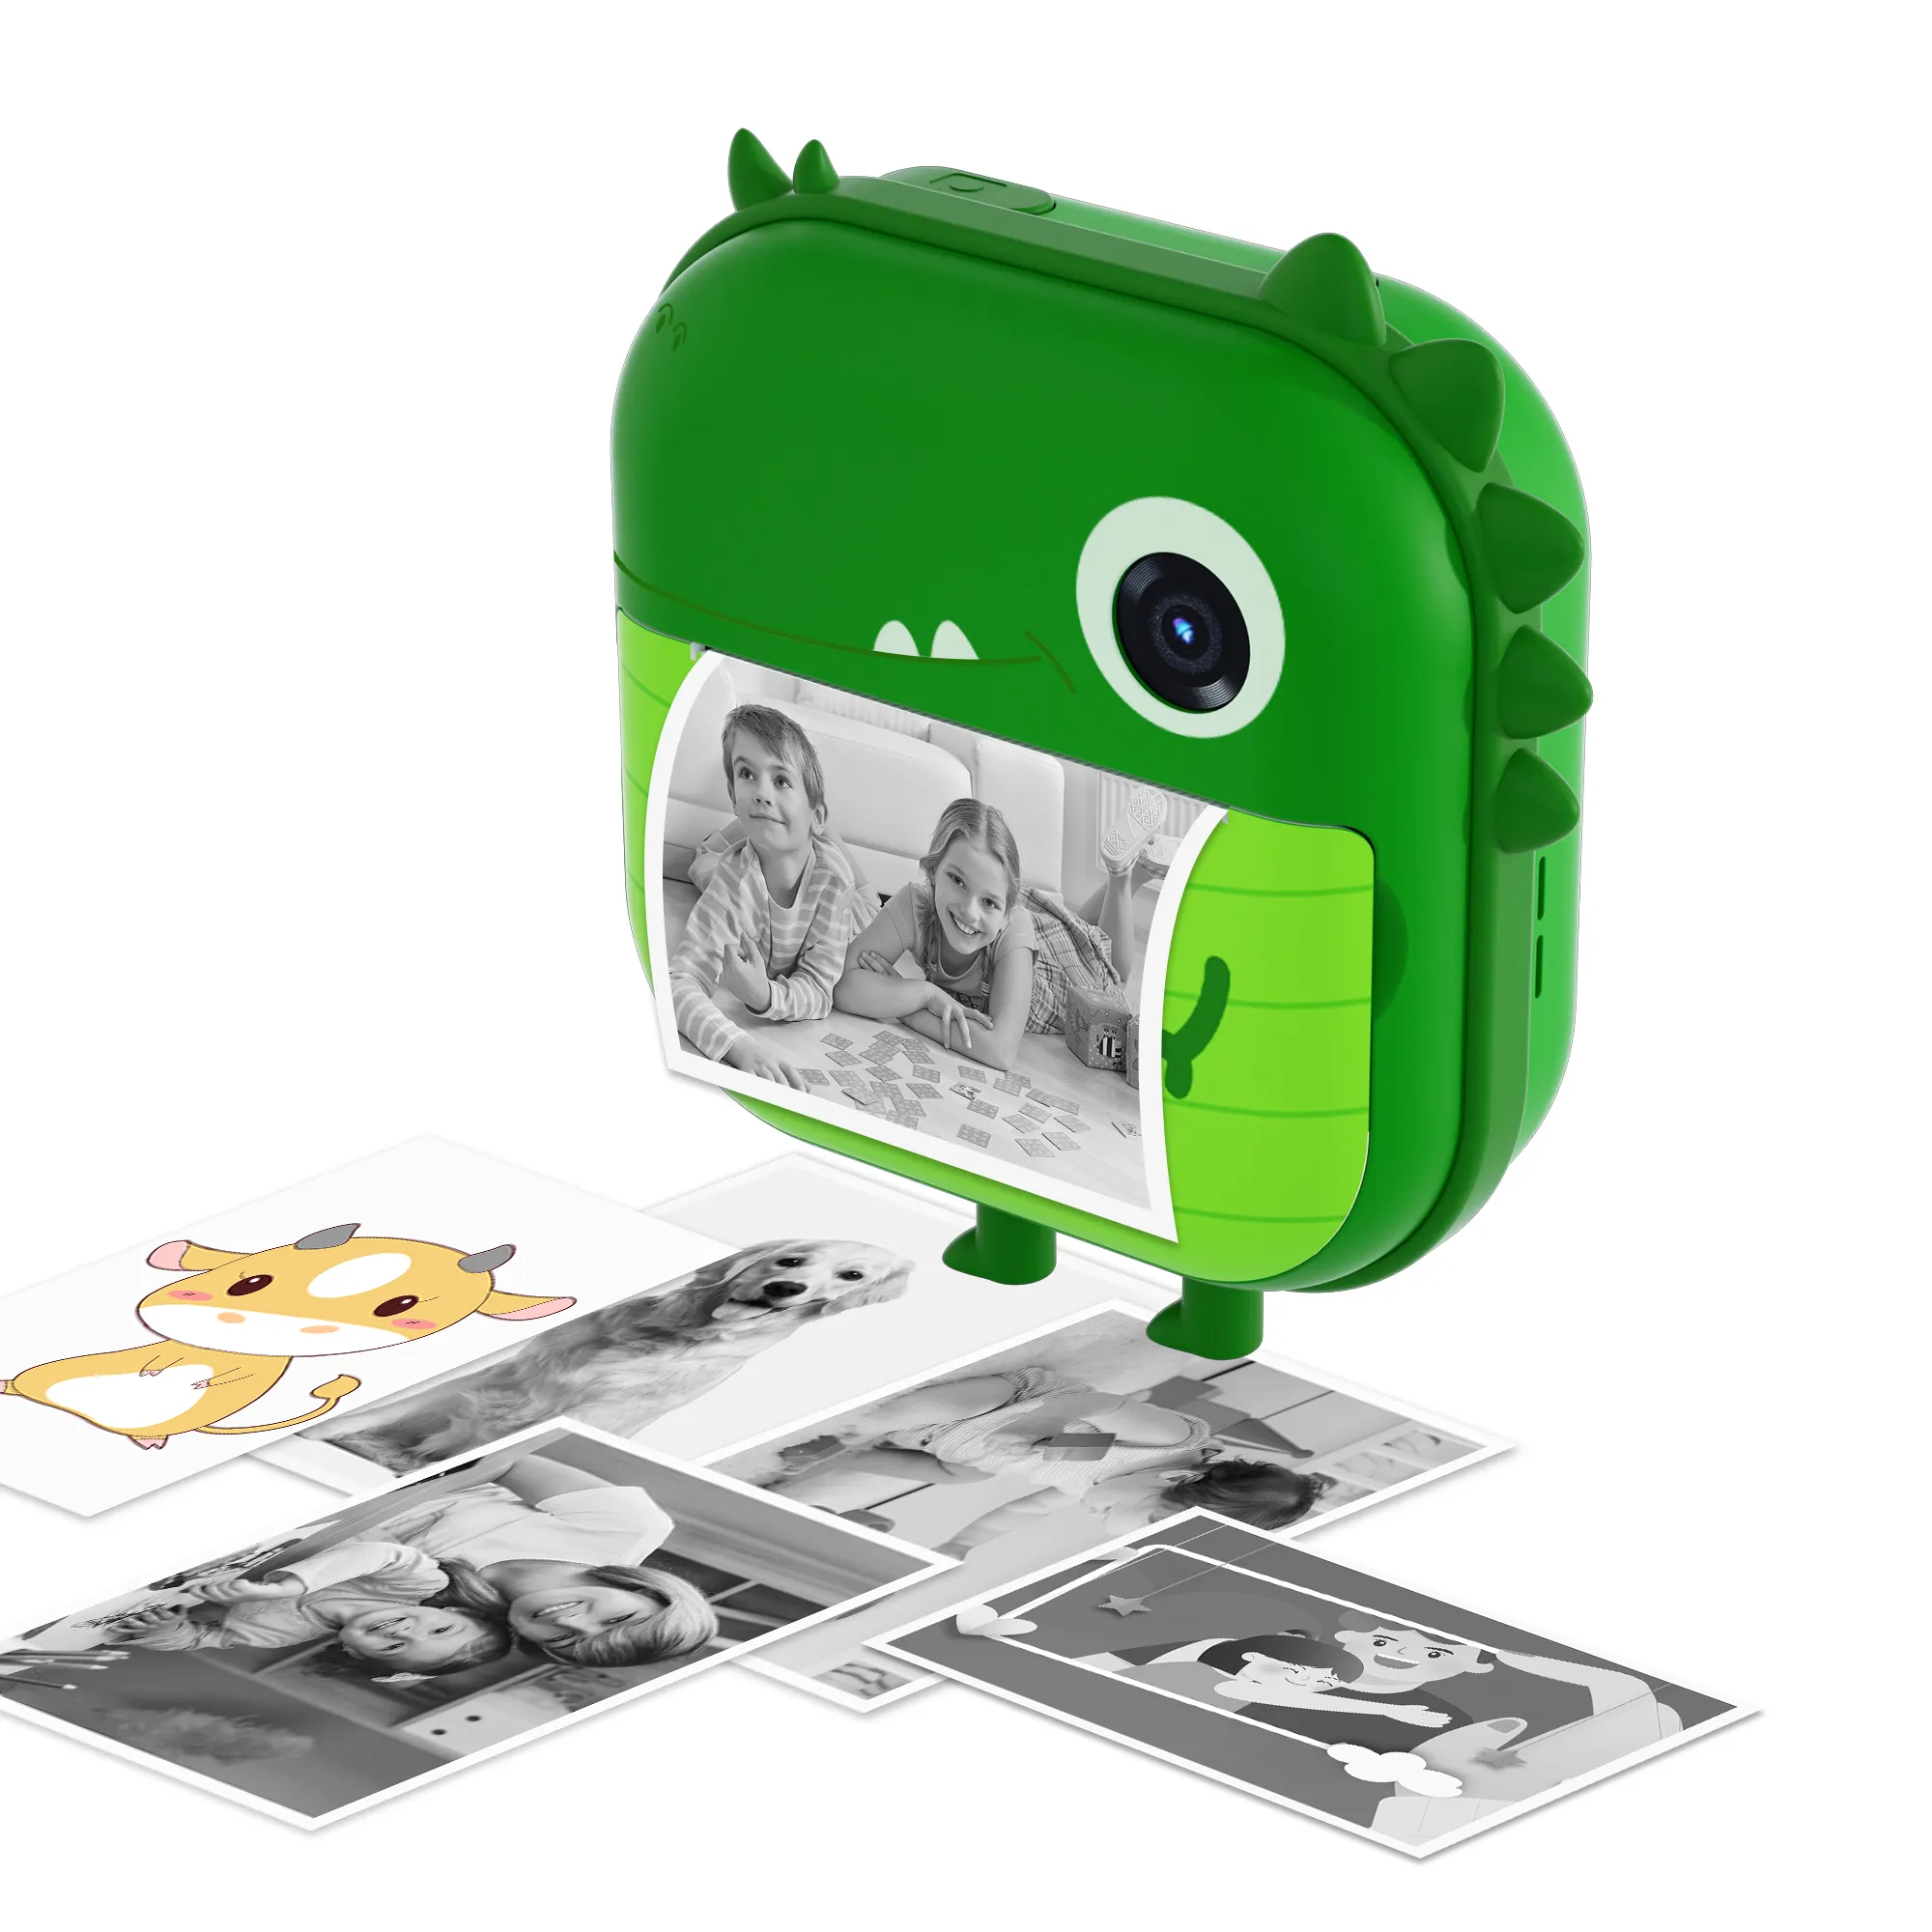 Taşınabilir yeşil 1080p Video kaydedici oyuncaklar dijital Selfie Hd çocuklar anlık kamera ile baskı kağıdı